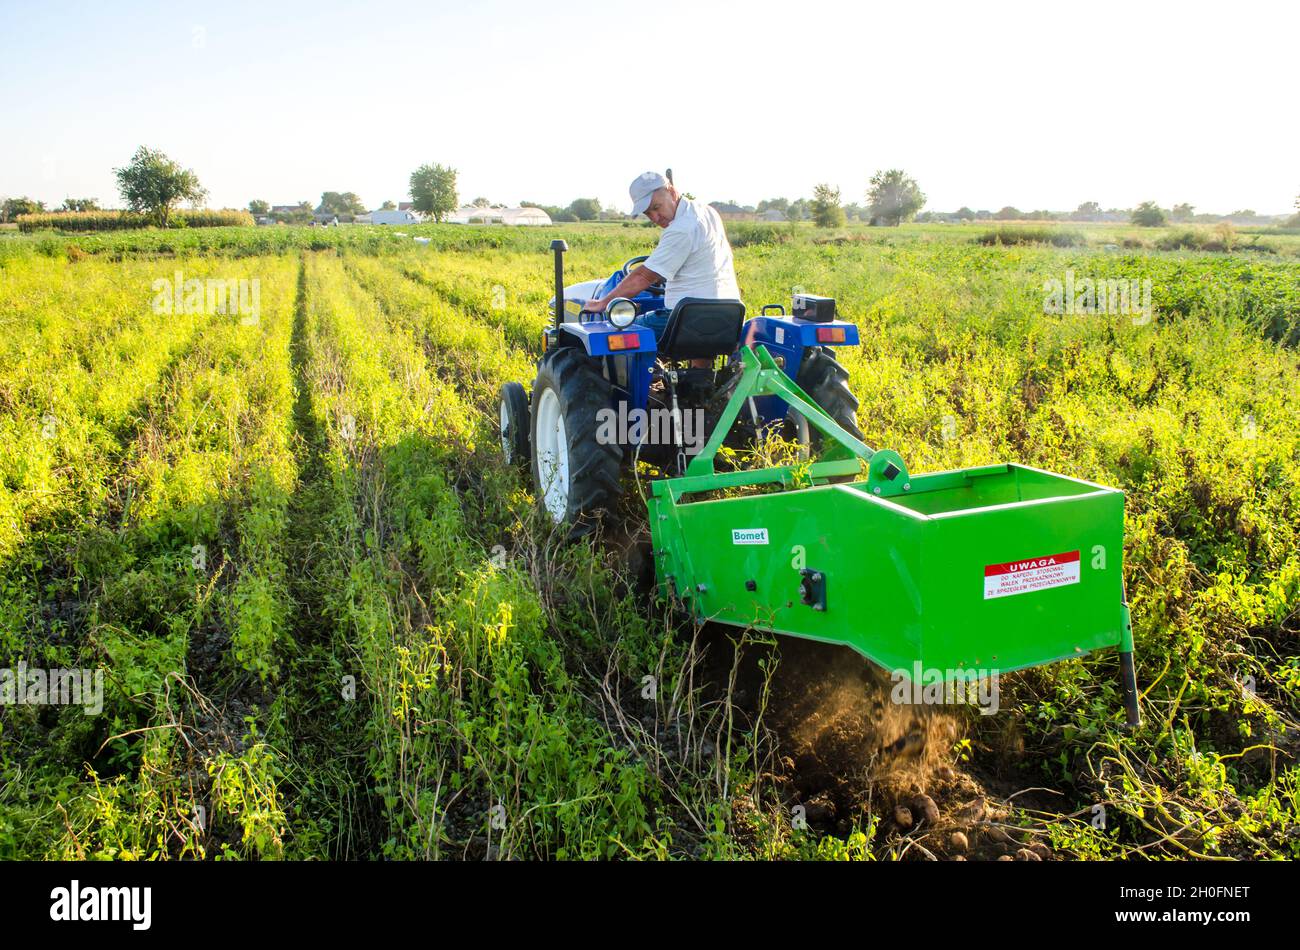 Cherson Oblast, Ukraine - 14. September 2020: Ein Bauer auf einem Traktor, der Kartoffeln ausgräbt. Landwirtschaft und Ackerland. Lebensmittelproduktion. Landwirtschaftliche Arbeit in Th Stockfoto